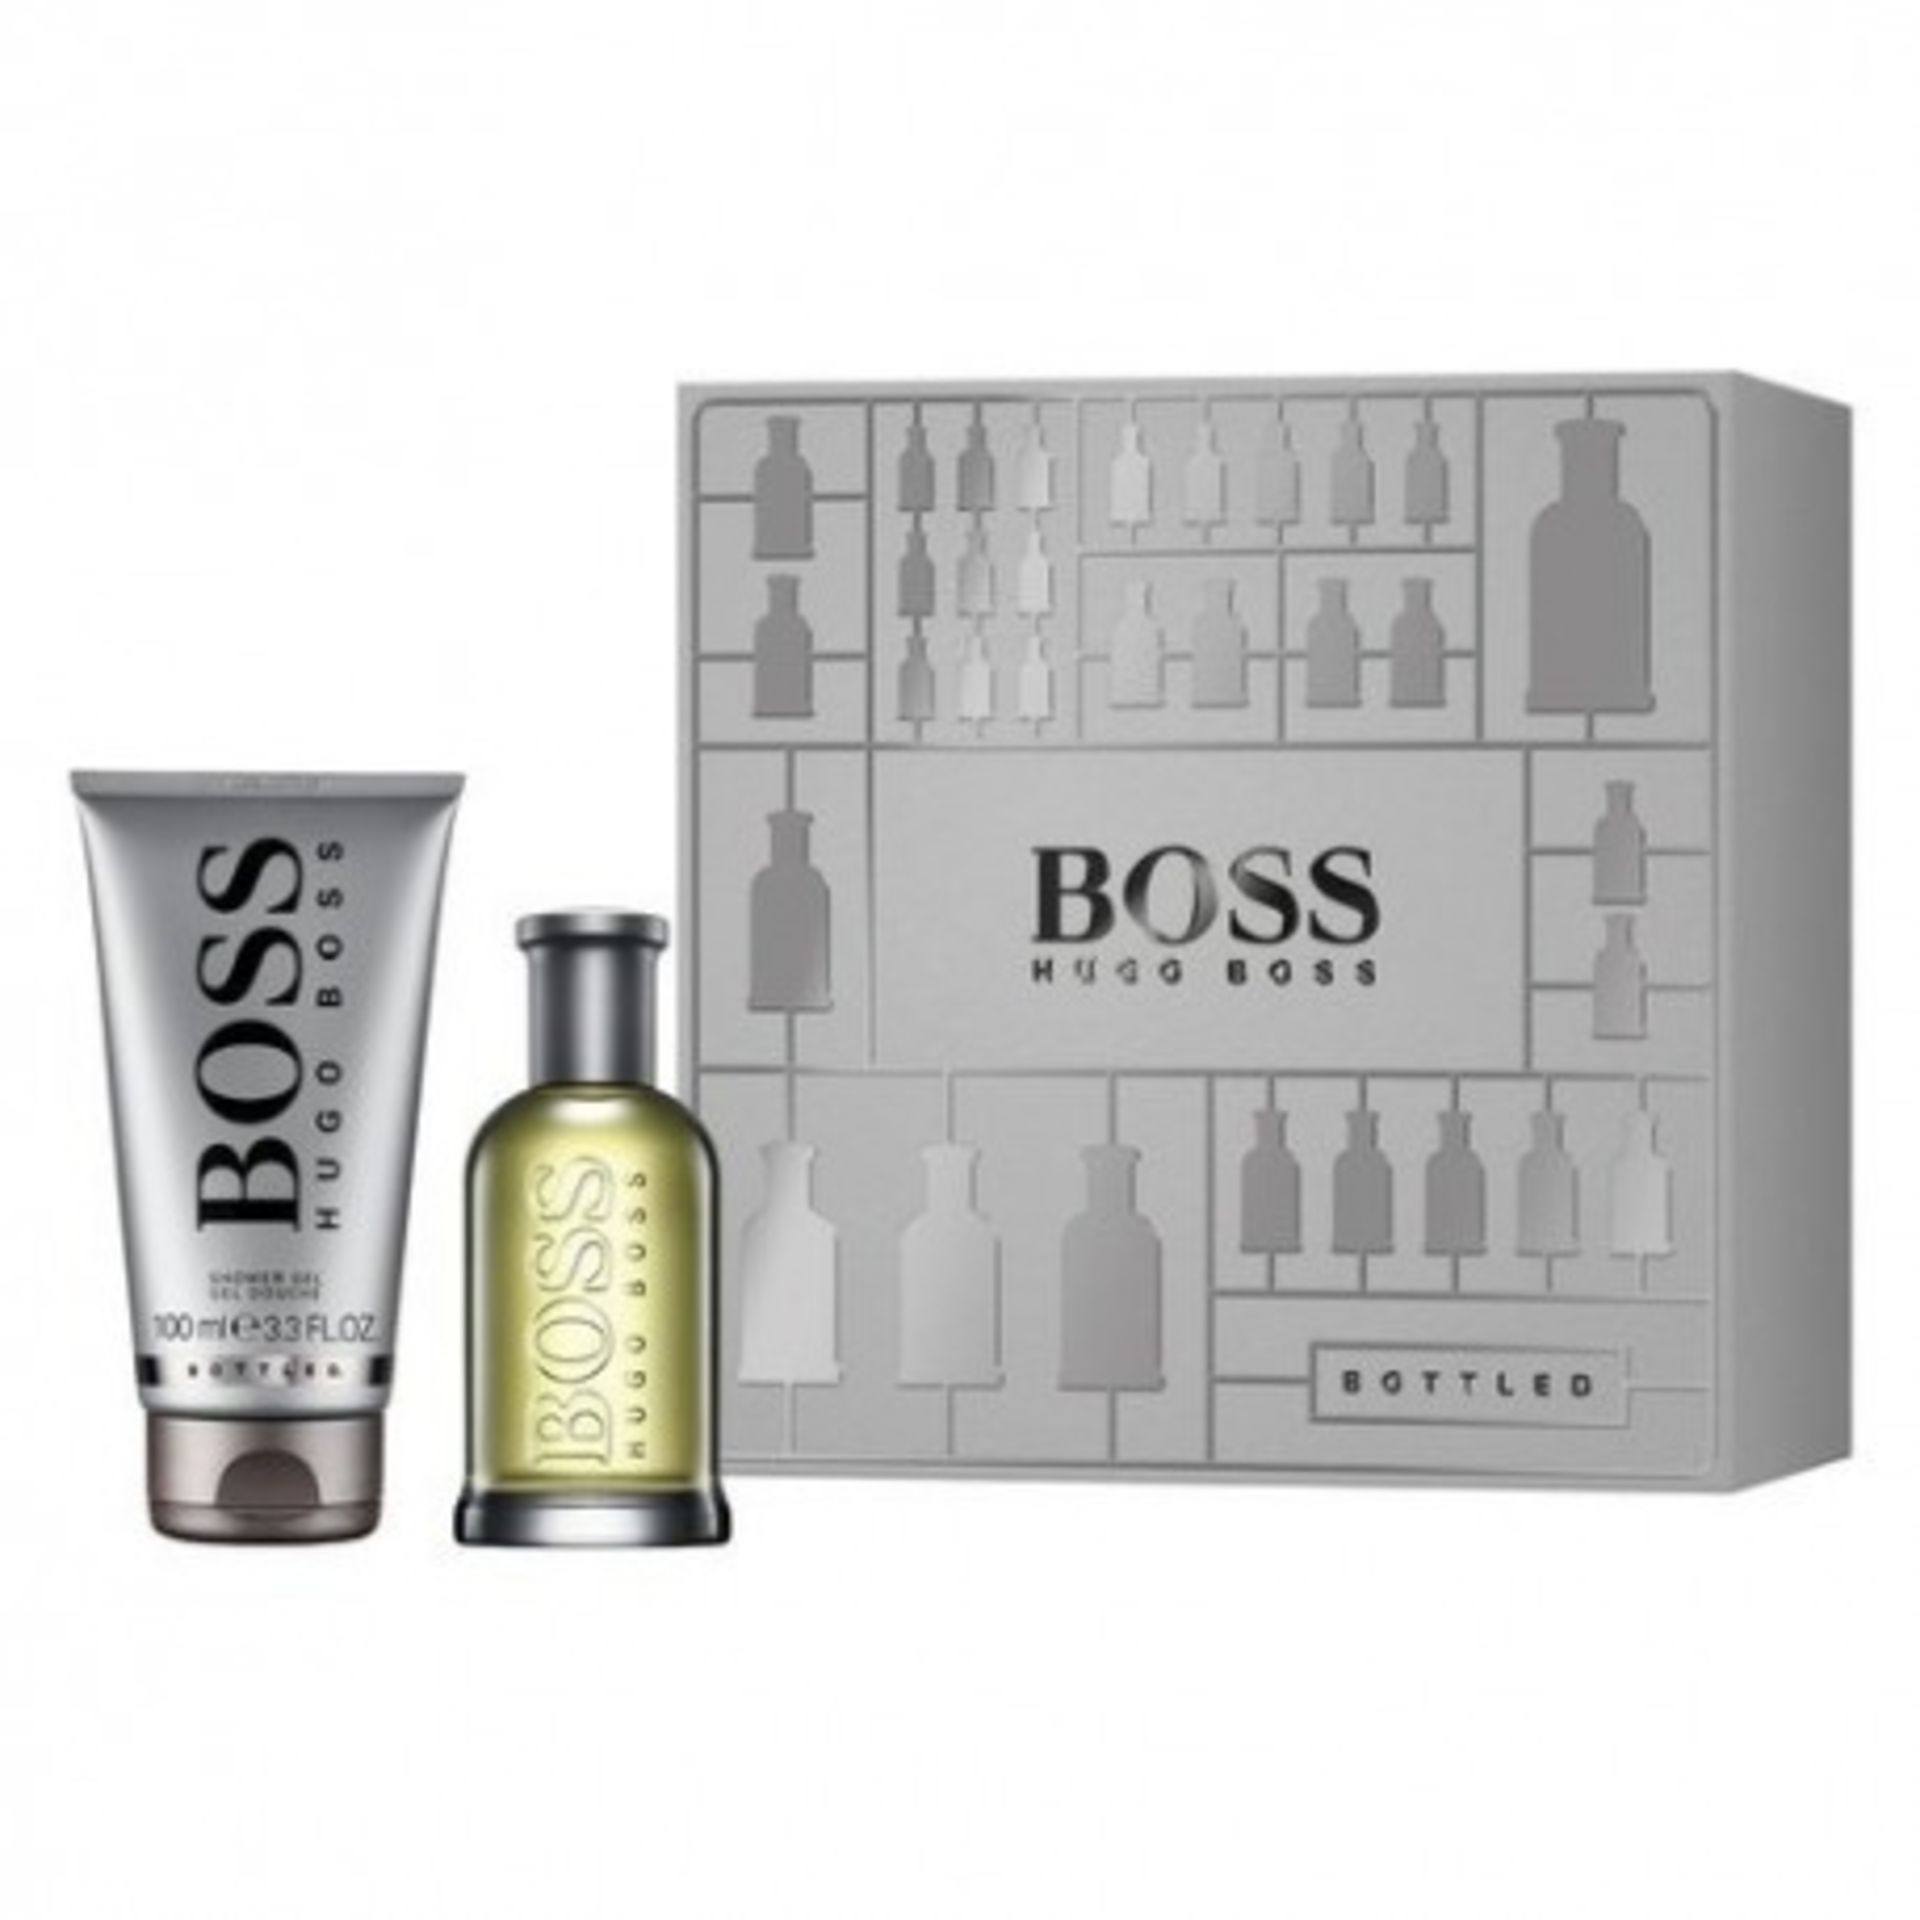 V Brand New Hugo Boss Bottled 50ml EDT + Shower Gel